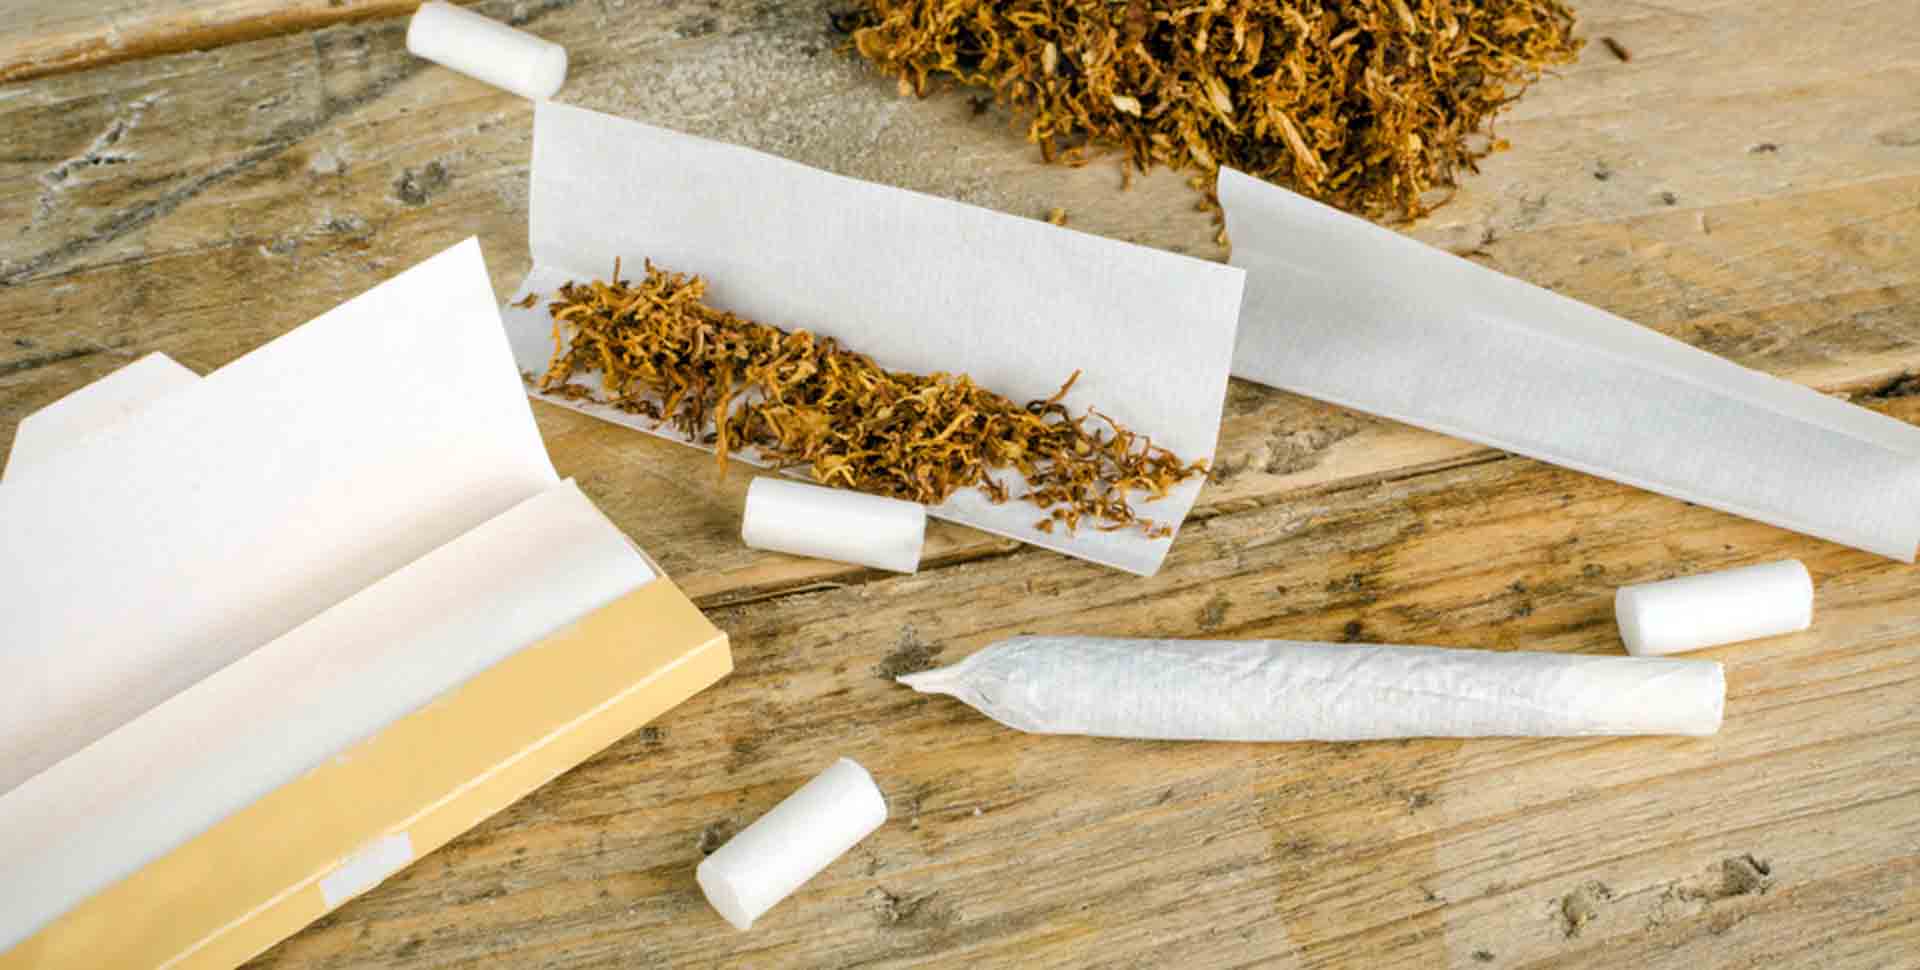 Cigaretové papieriky, tabak, rolovačka a ubalený joint